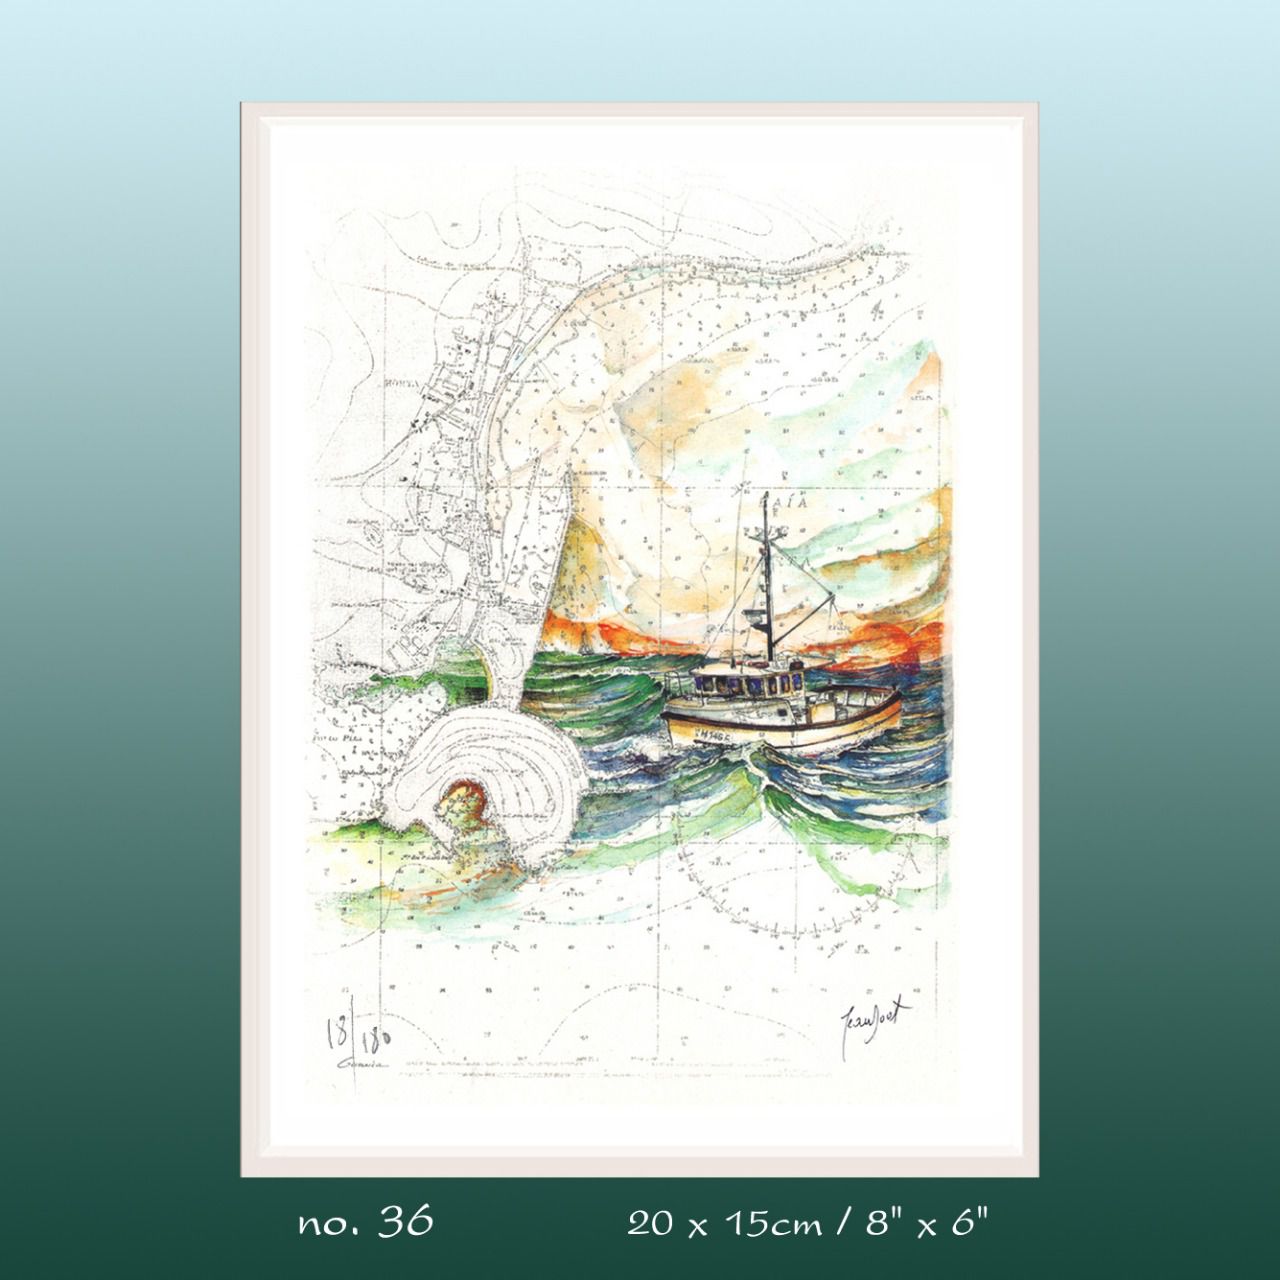 Aquarelle de J. Doat / 25 x 20 cm...................No.36 pf / Le Guernica, un palangrier des Açores